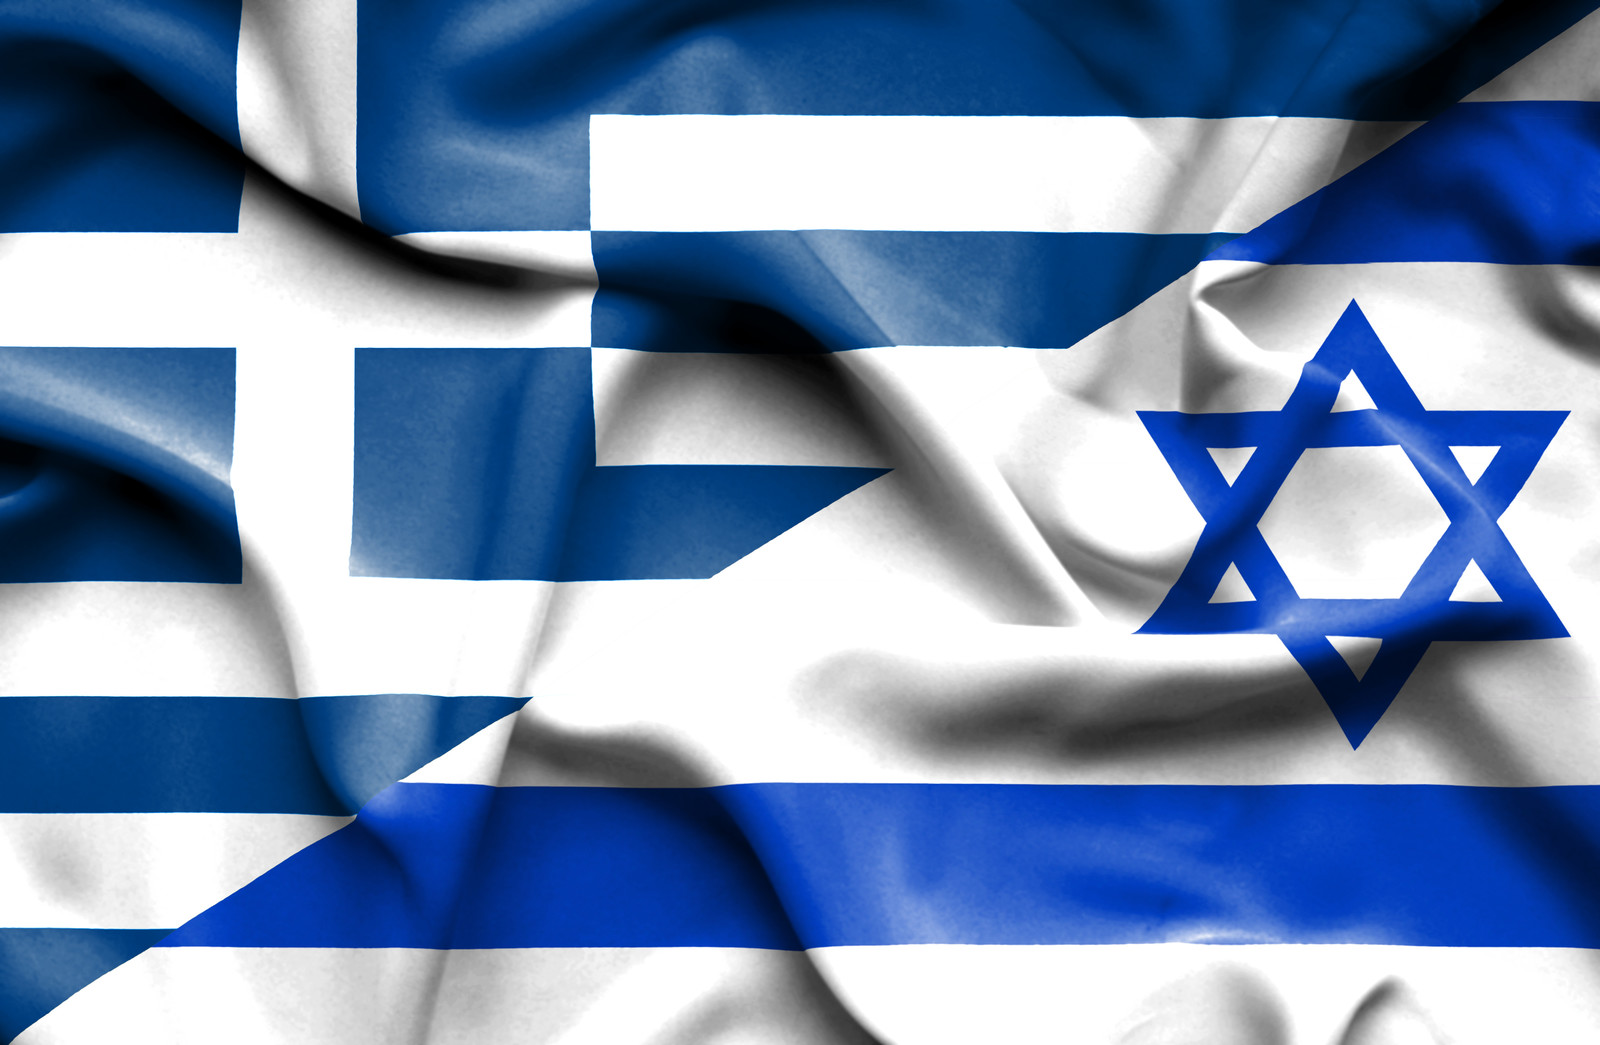 Î‘Ï€Î¿Ï„Î­Î»ÎµÏƒÎ¼Î± ÎµÎ¹ÎºÏŒÎ½Î±Ï‚ Î³Î¹Î± greece israel